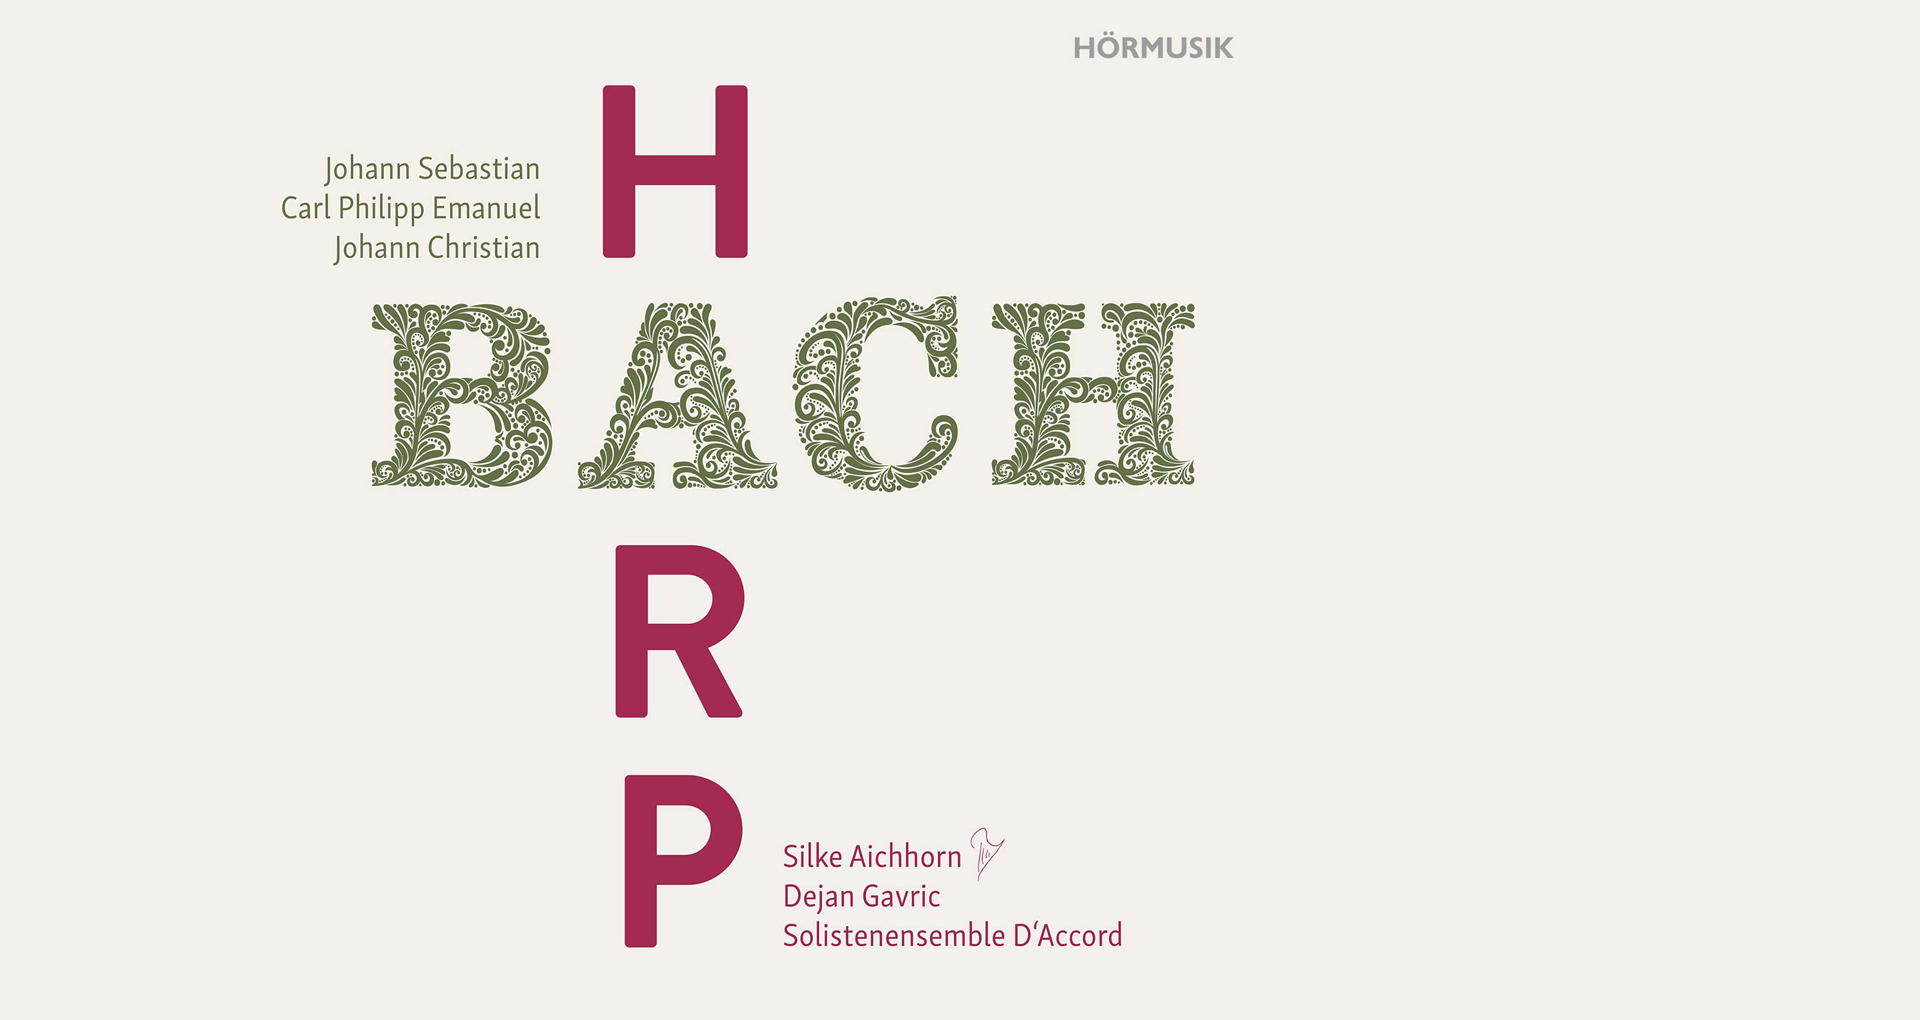 BACH BACH BACH Harp // Das 30. Album von Silke Aichhorn